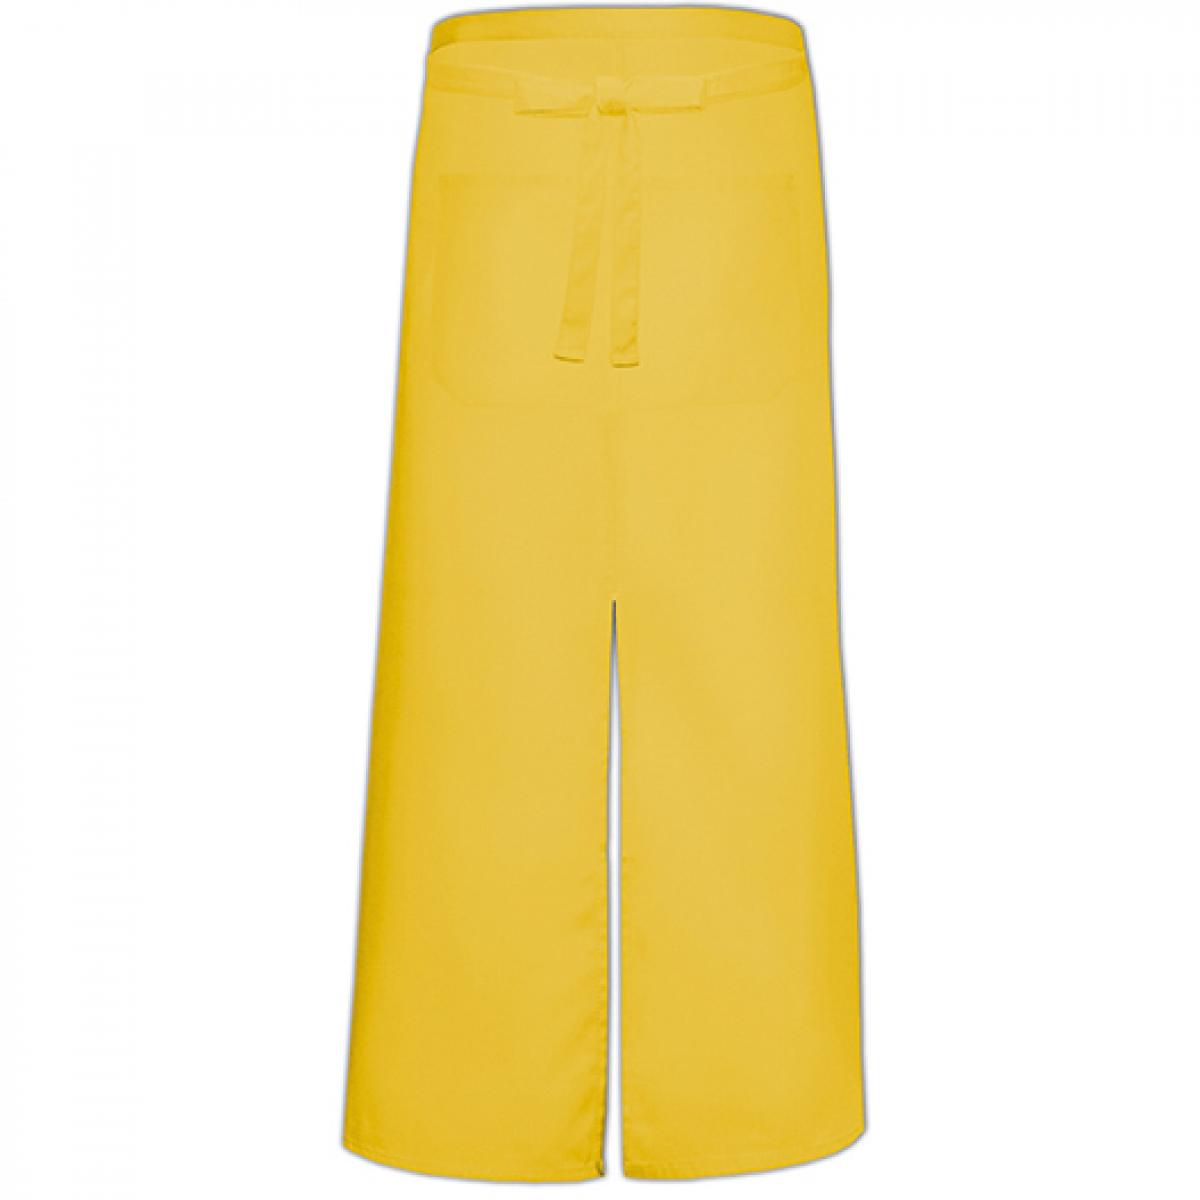 Hersteller: Link Kitchen Wear Herstellernummer: FS100100SP Z Artikelbezeichnung: Bistro Apron with Split and Front Pocket - 100 x 100 cm Farbe: Yellow